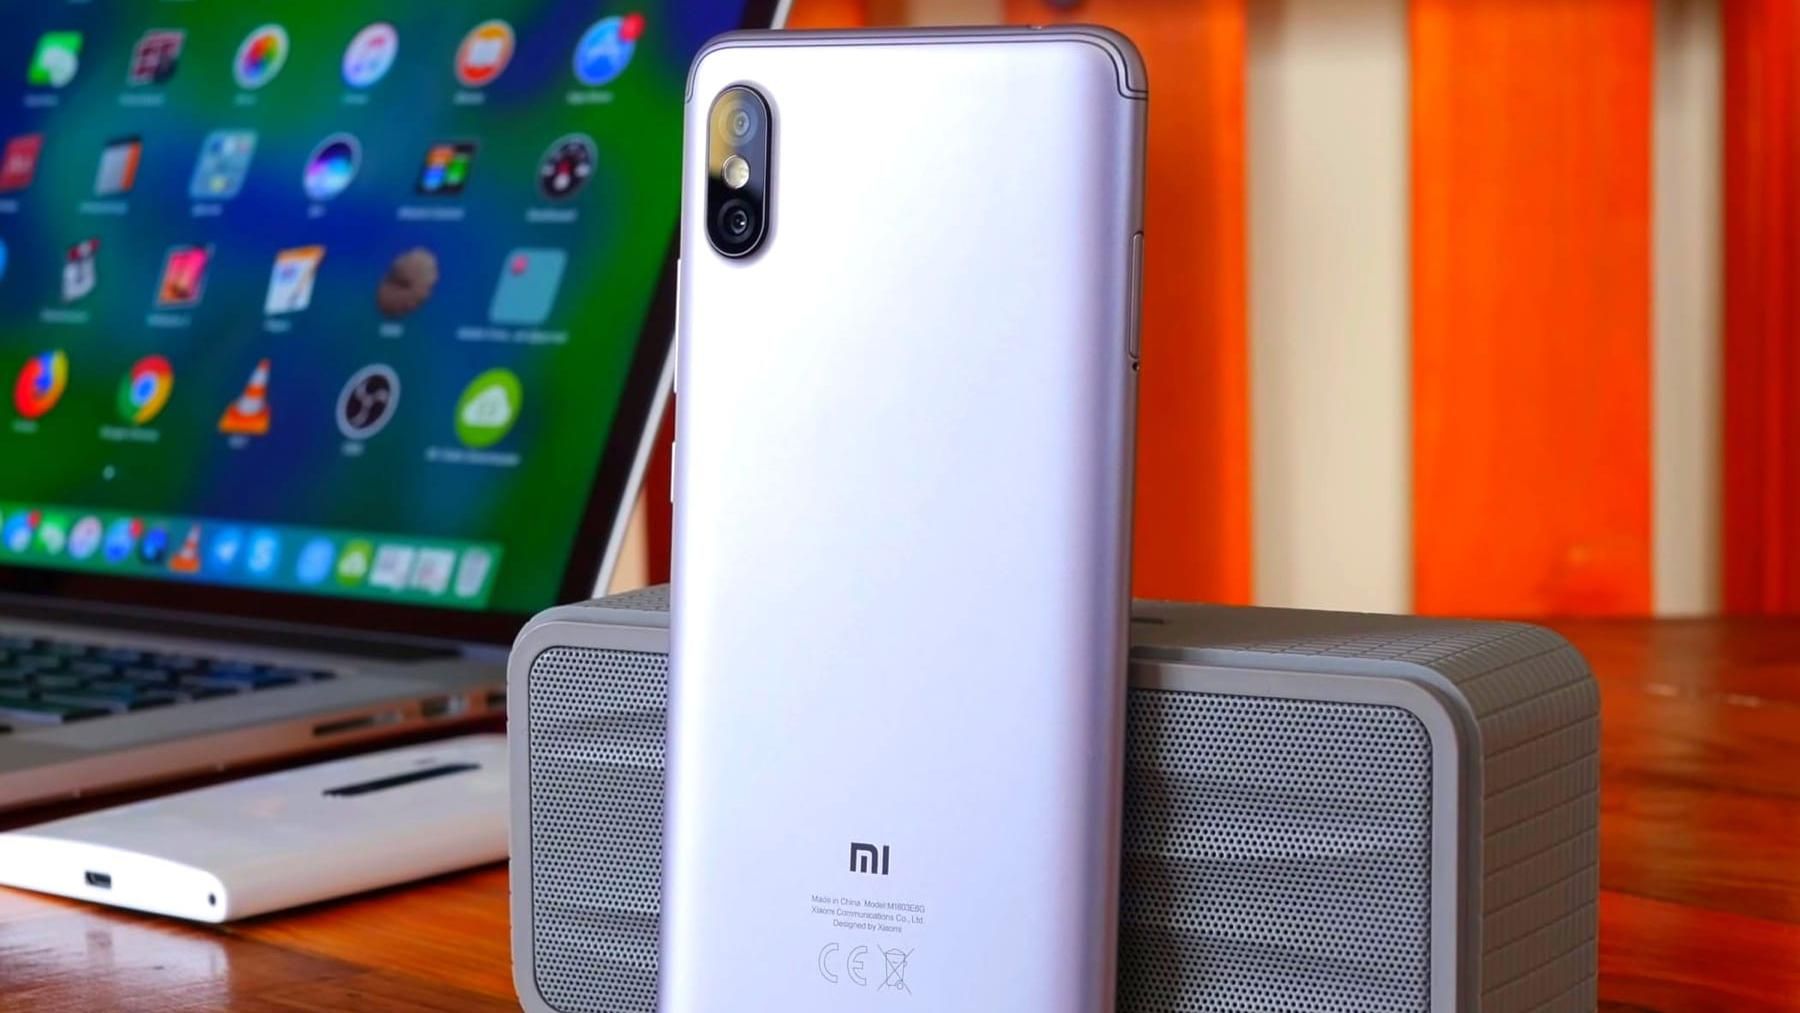 MIUI 10 и смартфоны Xiaomi получат улучшенную камеру - детали